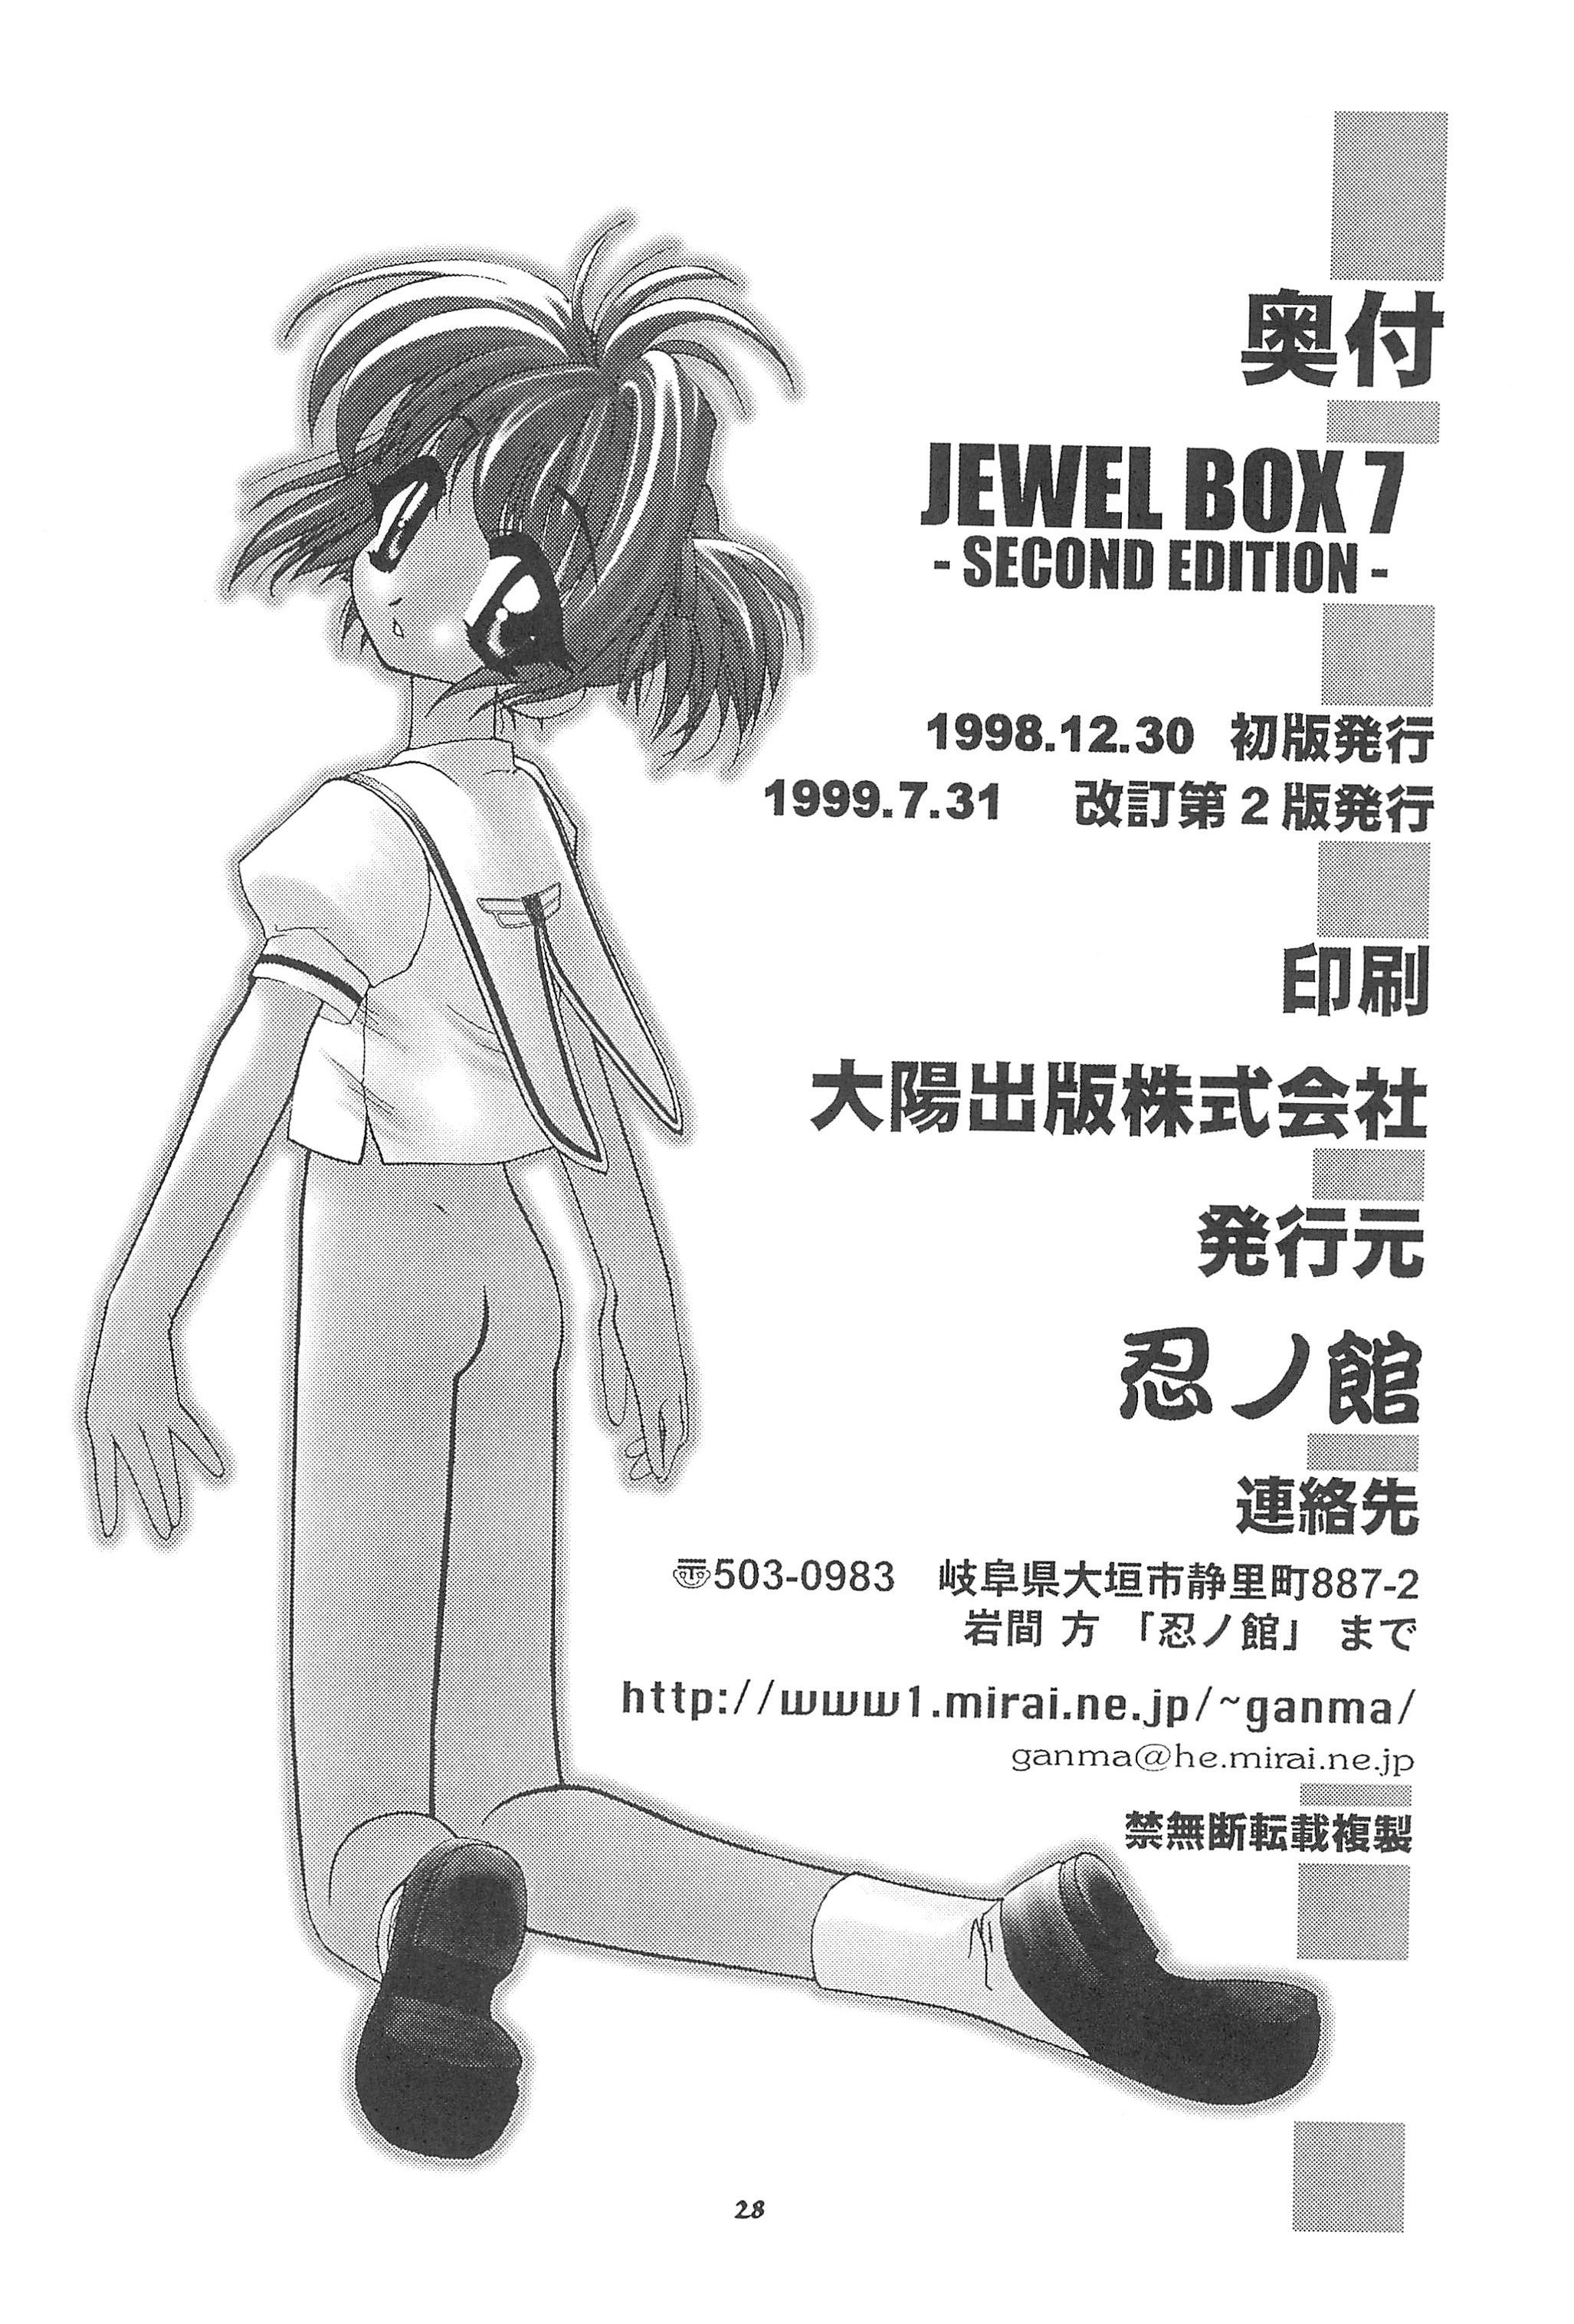 [Shinobi no Yakata (Iwama Yoshiki) JEWEL BOX 7 -SECOND EDITION- (CardCaptor Sakura) [1997-07-31] 32